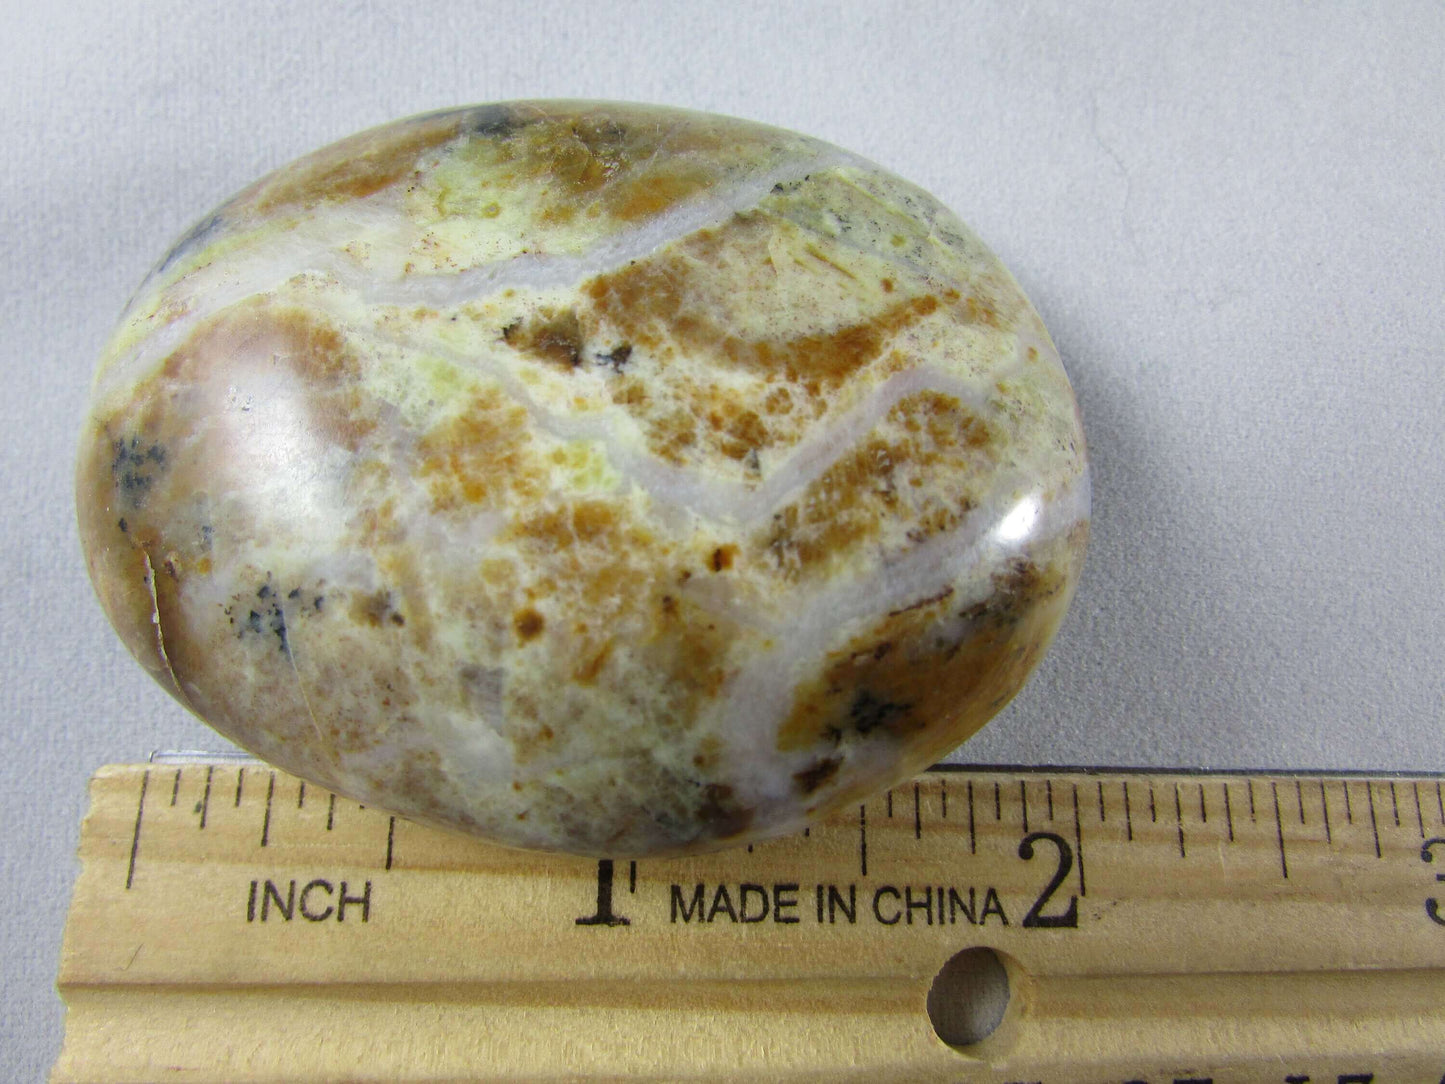 Green Opal Palmstone, Madagascar Crystals